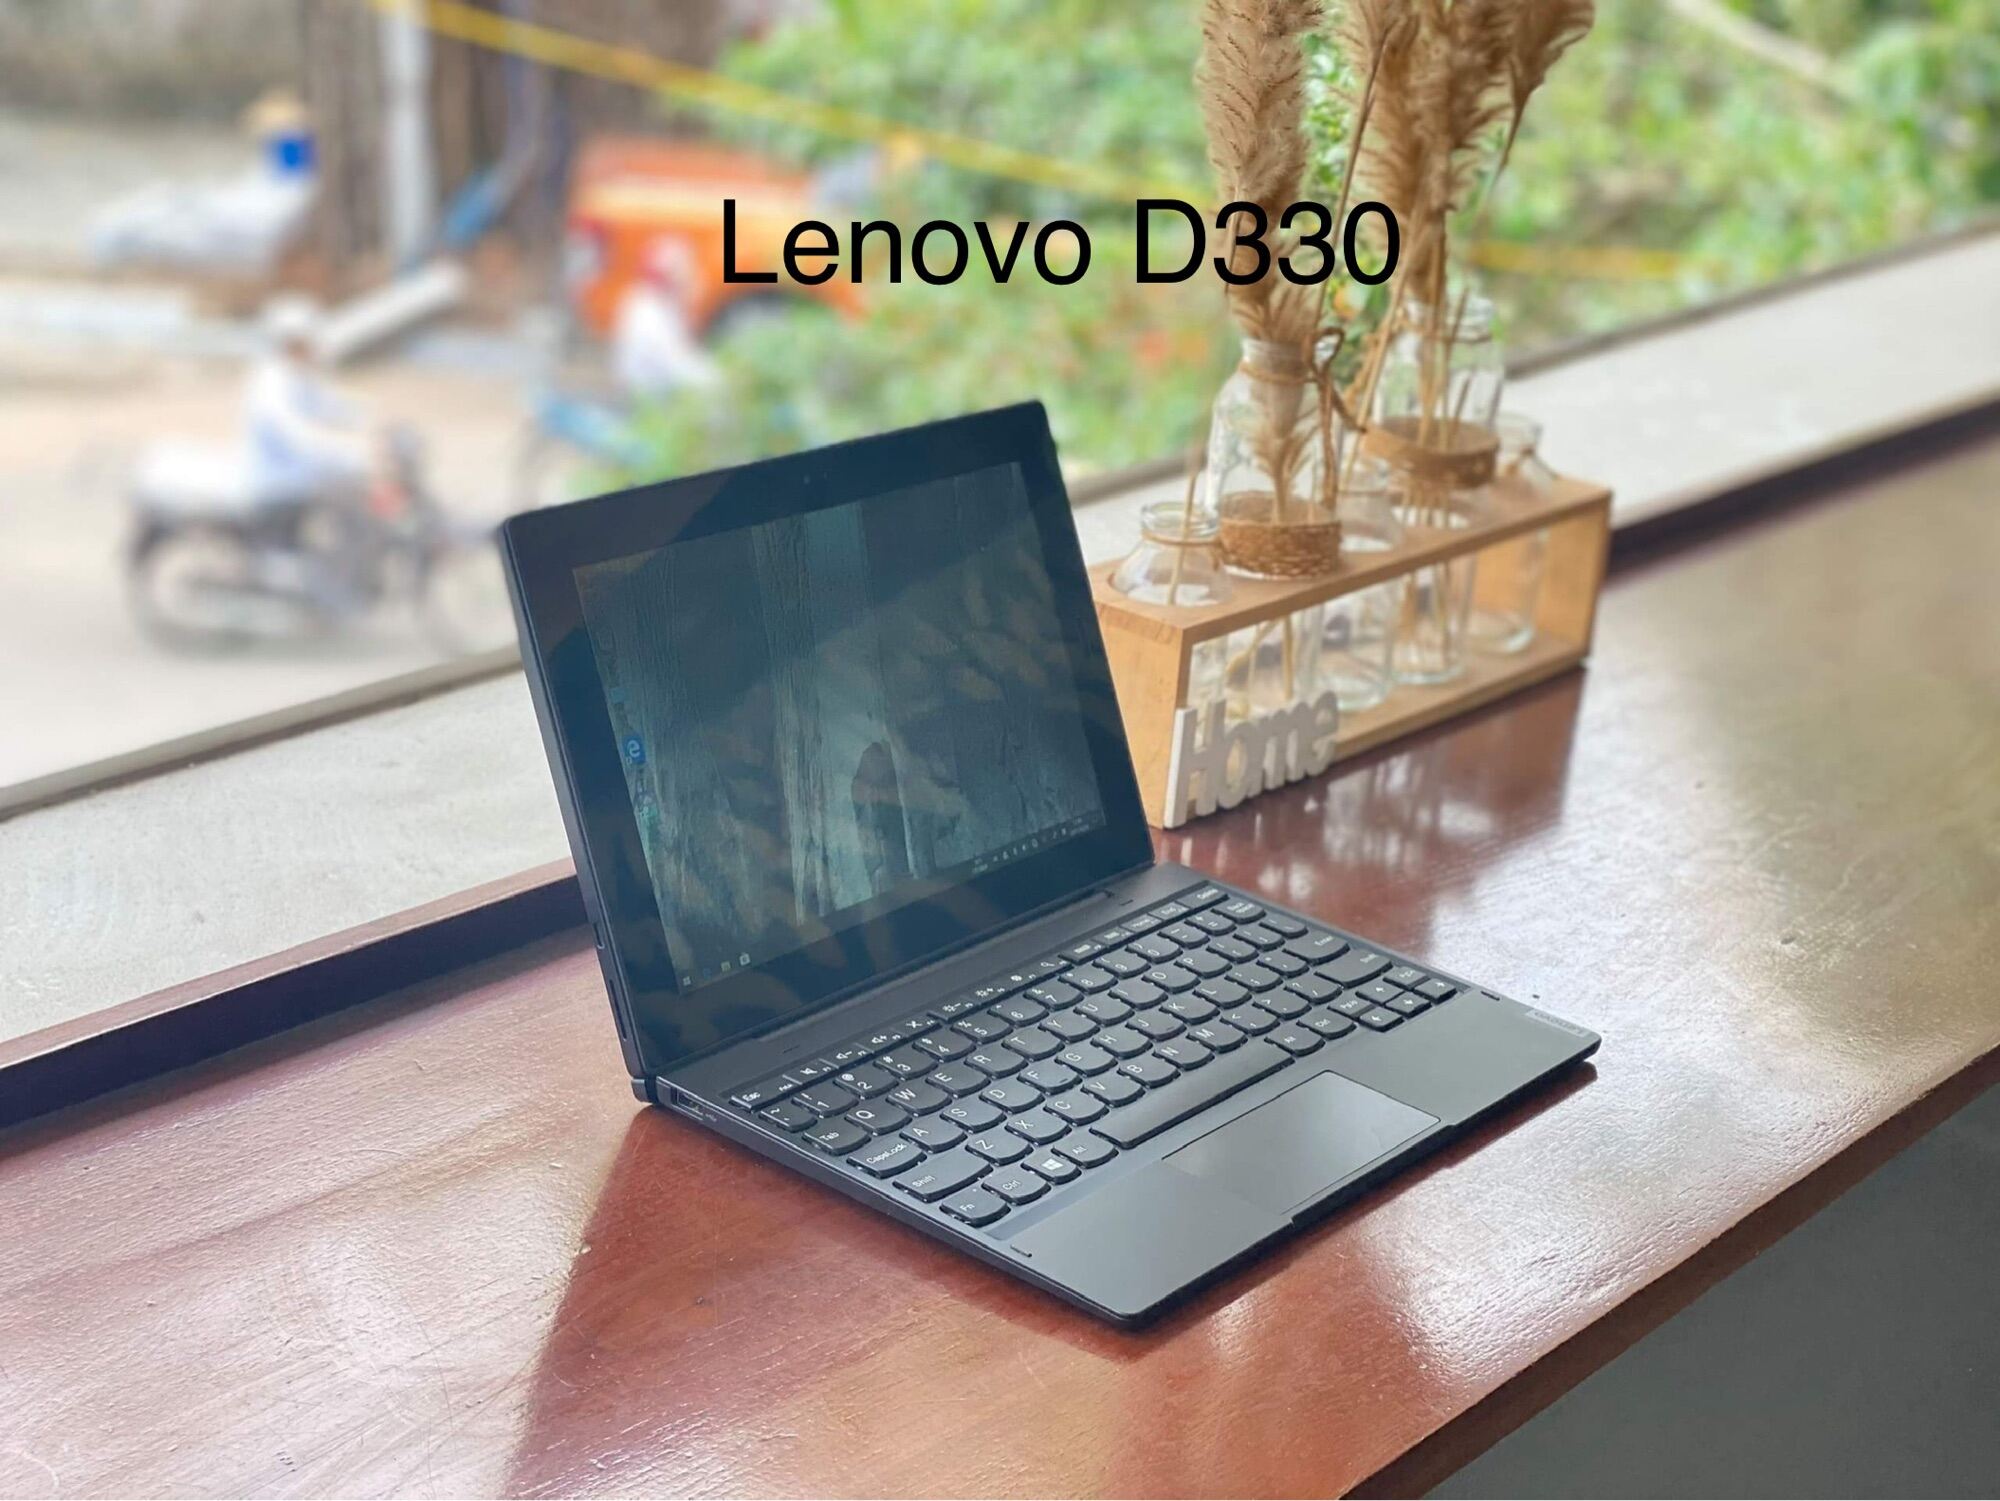 Bảng giá Lenovo D330 8gb / ssd 256gb/ màn FHD Phong Vũ